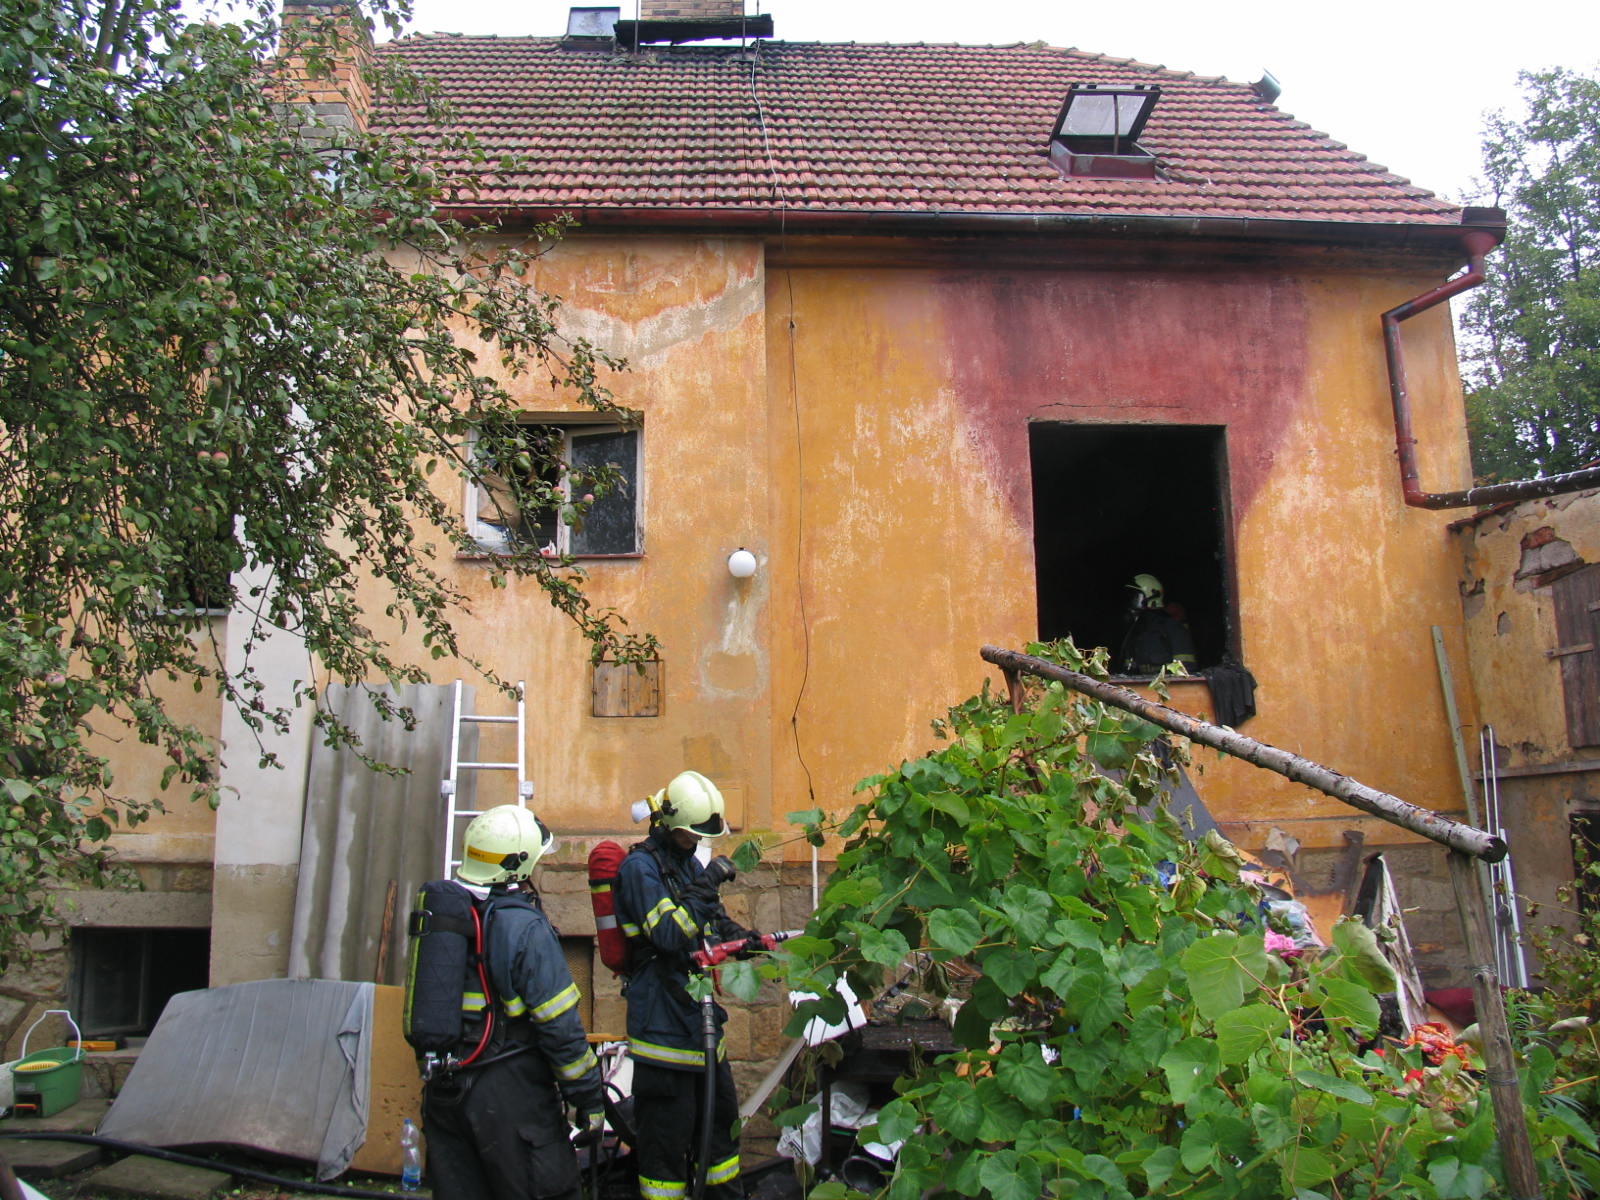 5 Požár rodinného domu, Písek - 20. 8. 2013 (5).jpg